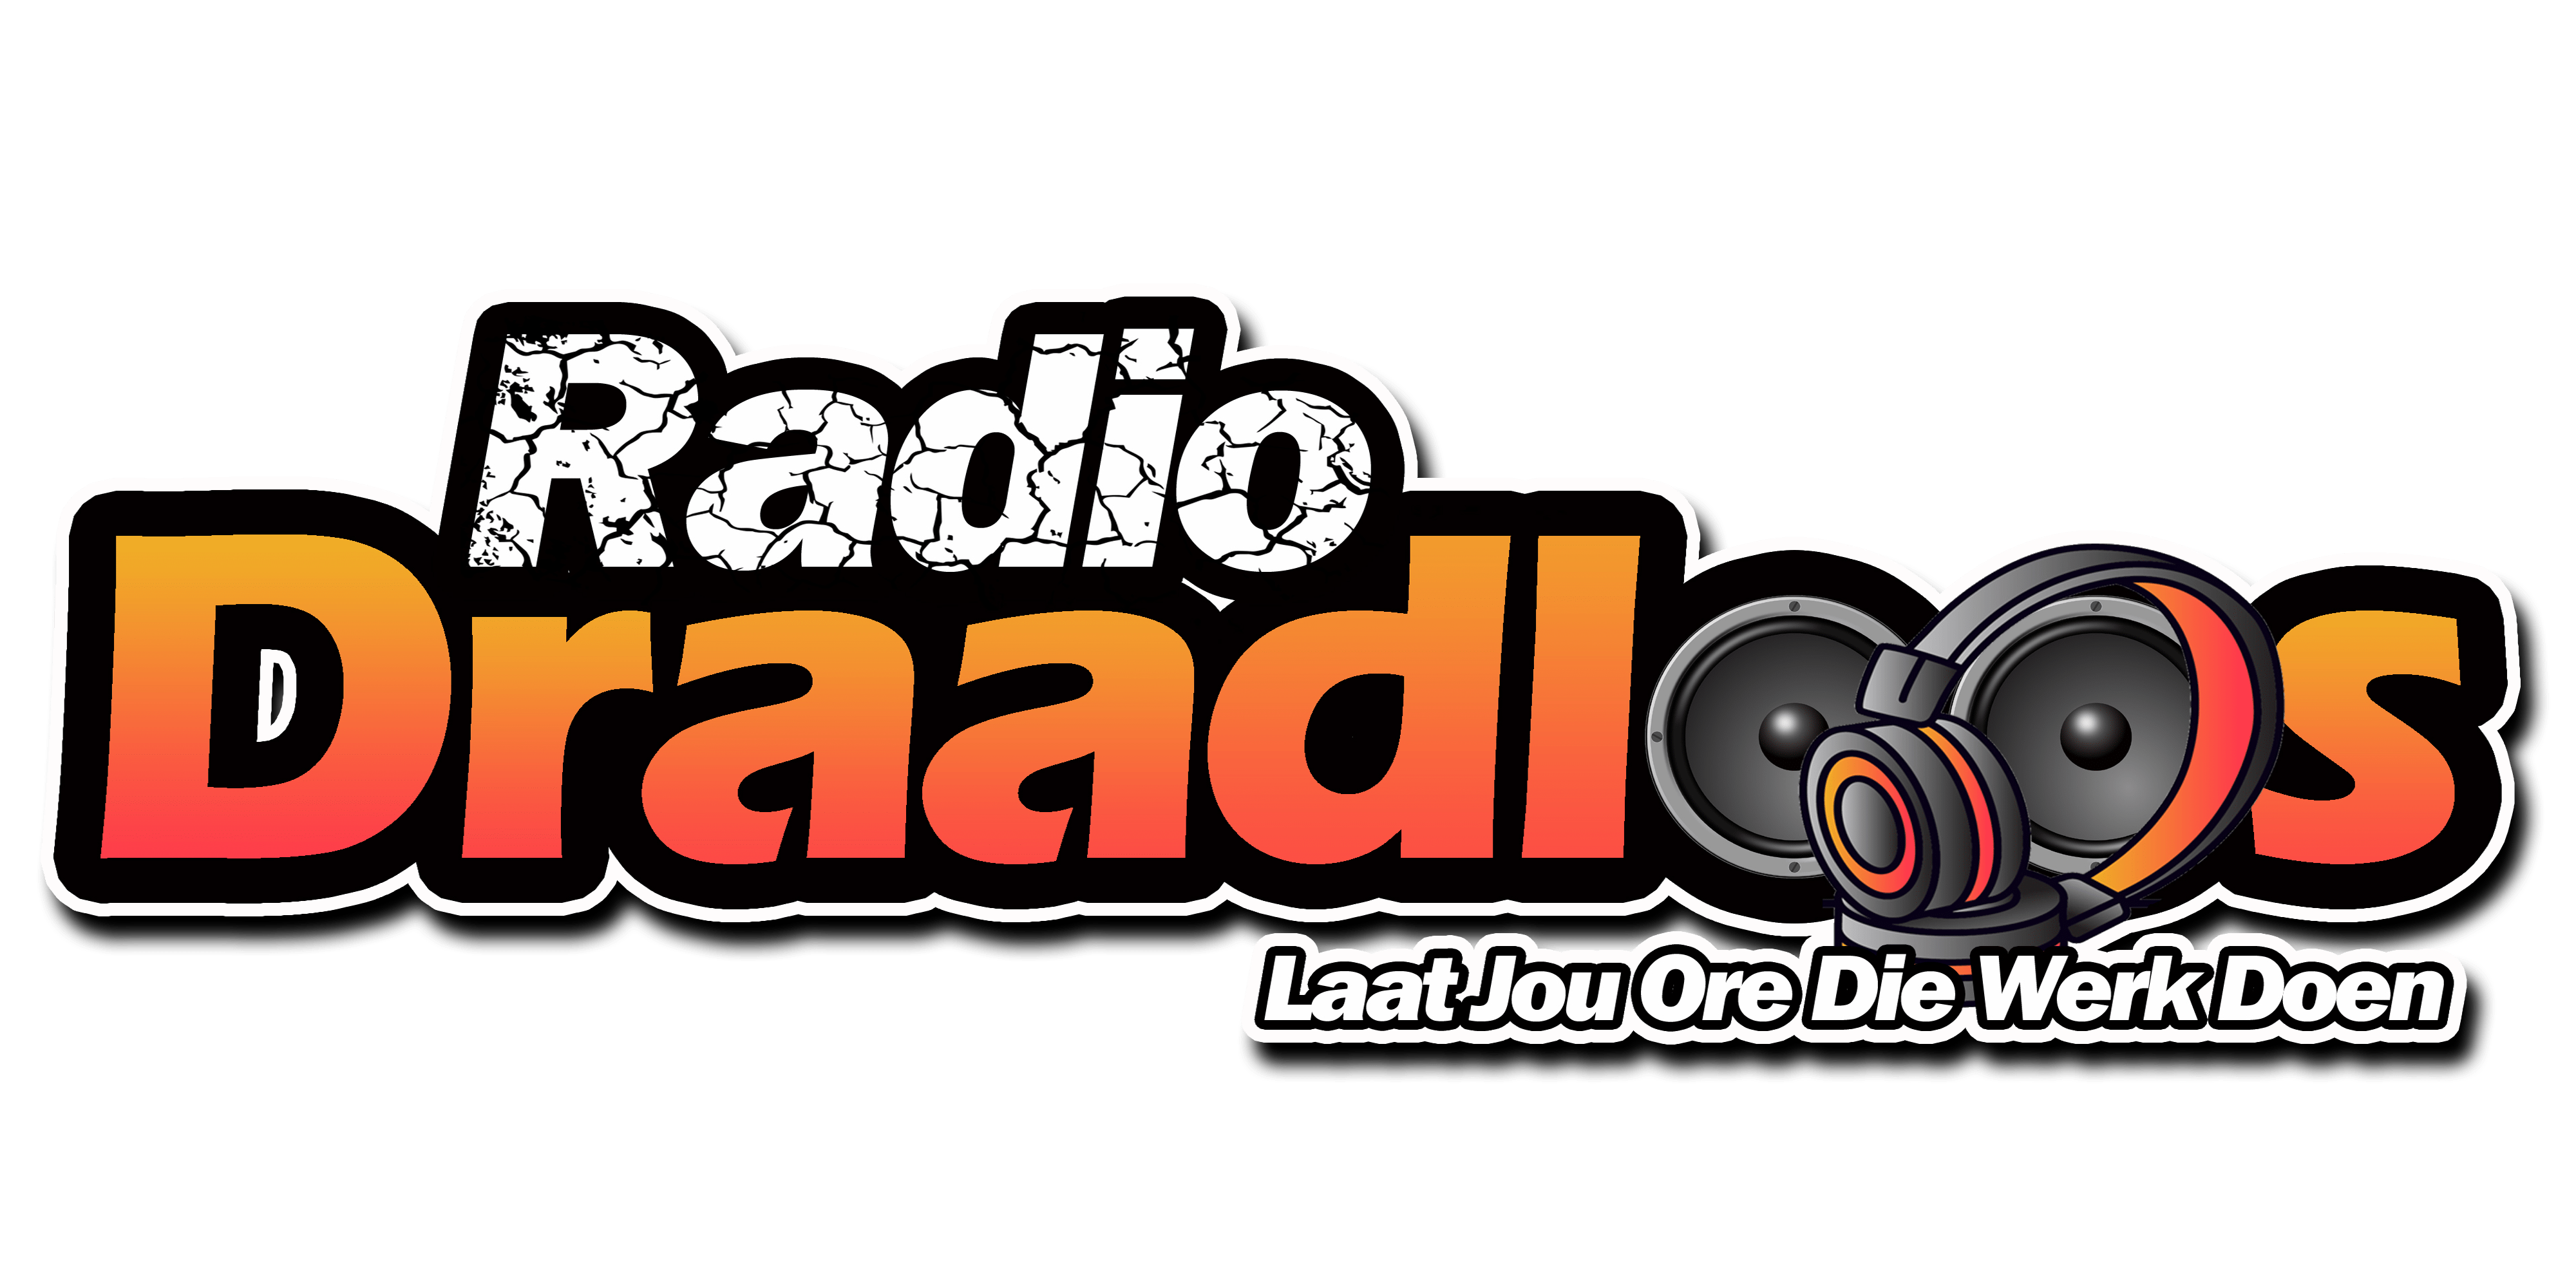 Radio Draadloos